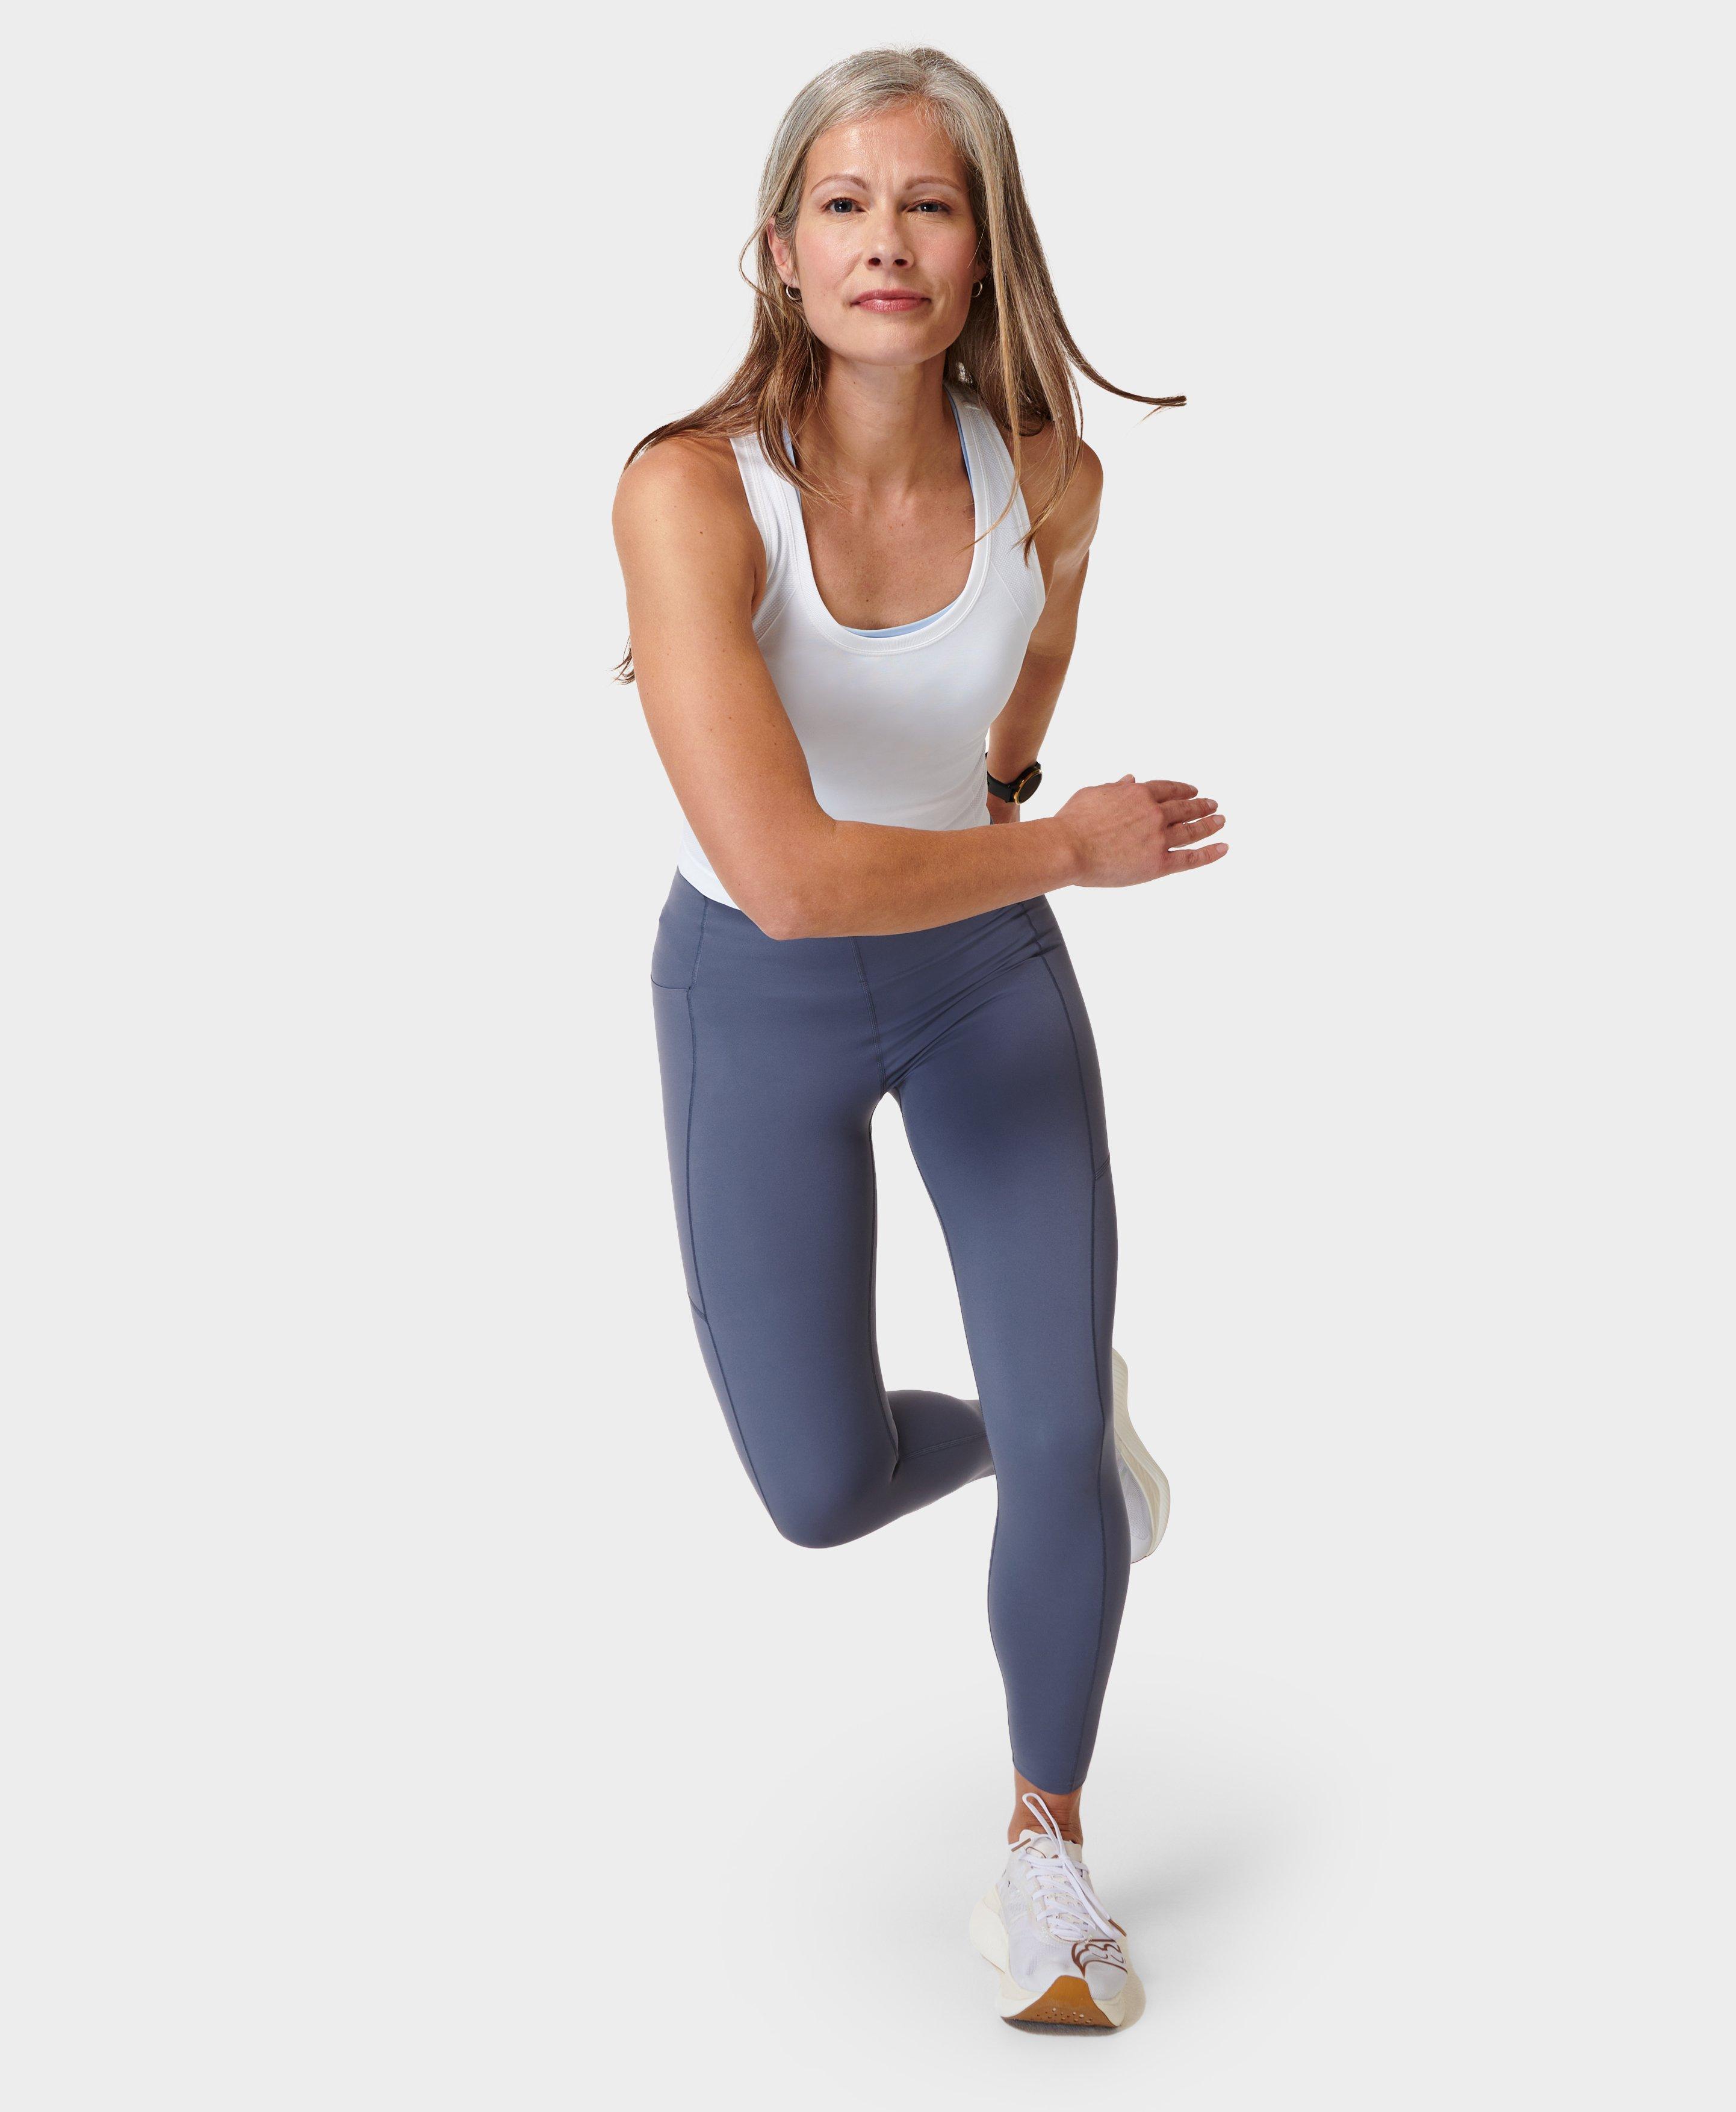 Women's High Waist Workout Yoga pant Scrunch Butt Lift Push Up Seamless  Leggings | eBay